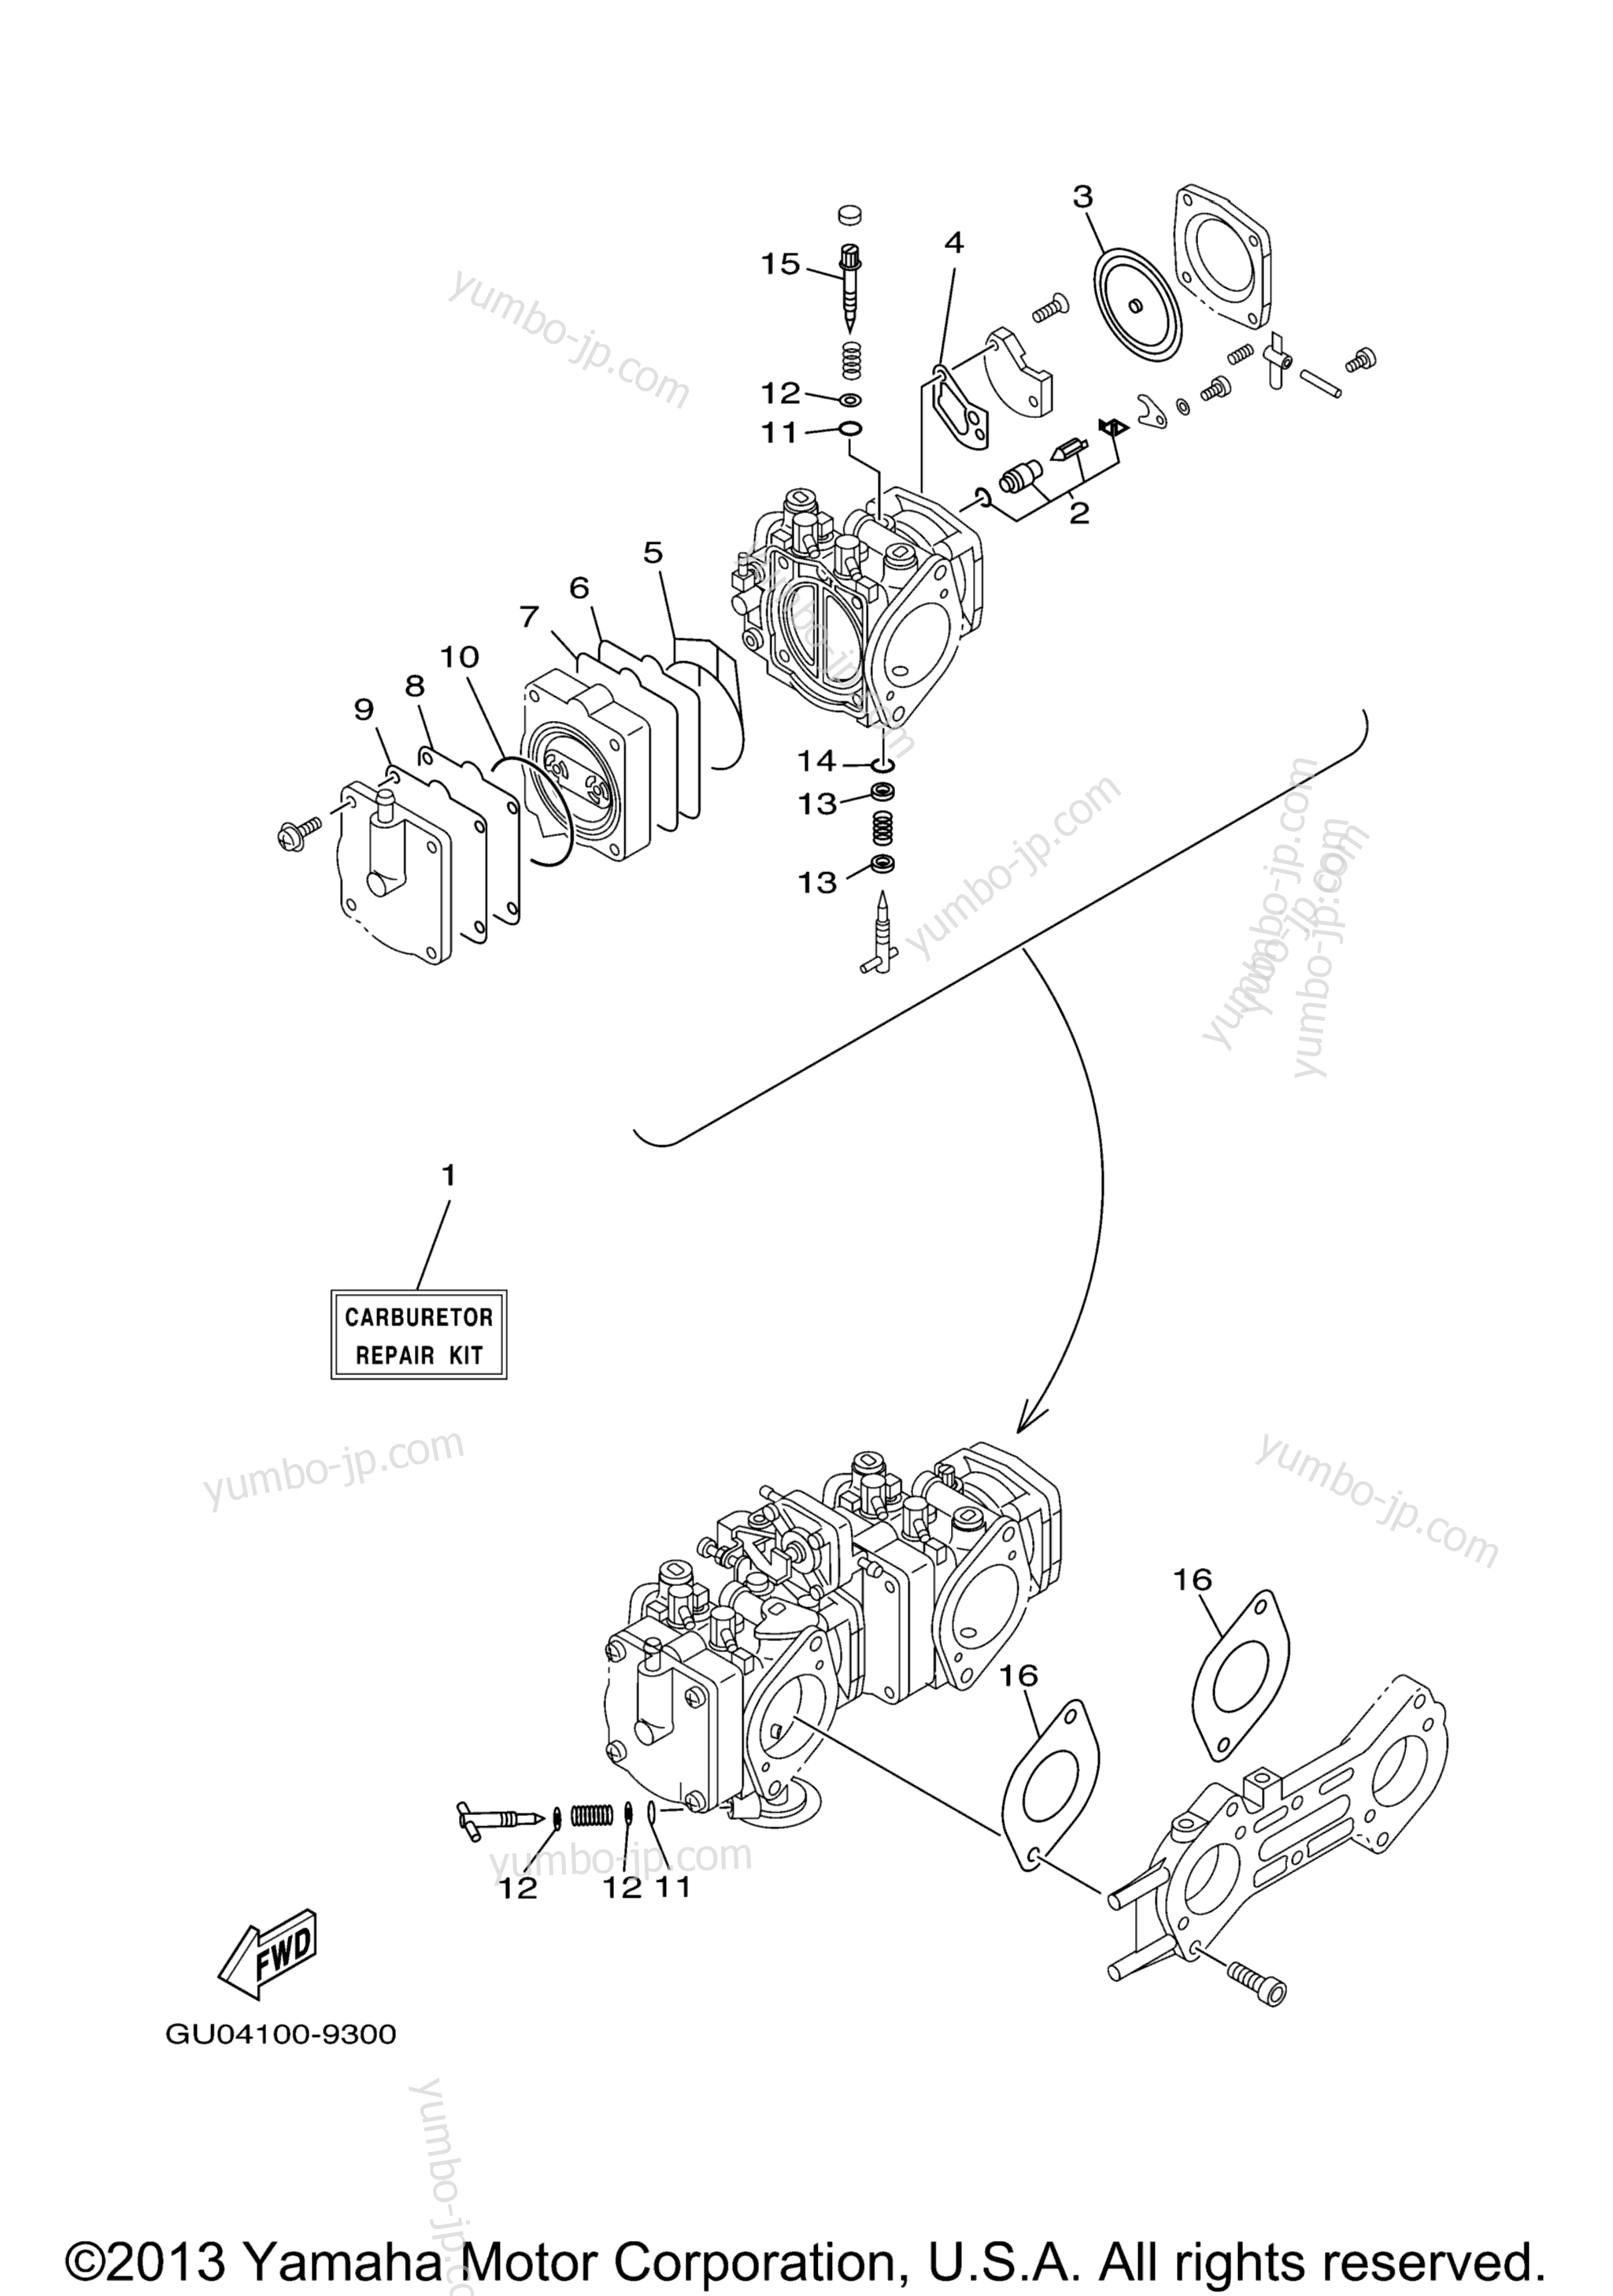 Repair Kit 2 для гидроциклов YAMAHA GP800R (GP800AB) 2003 г.